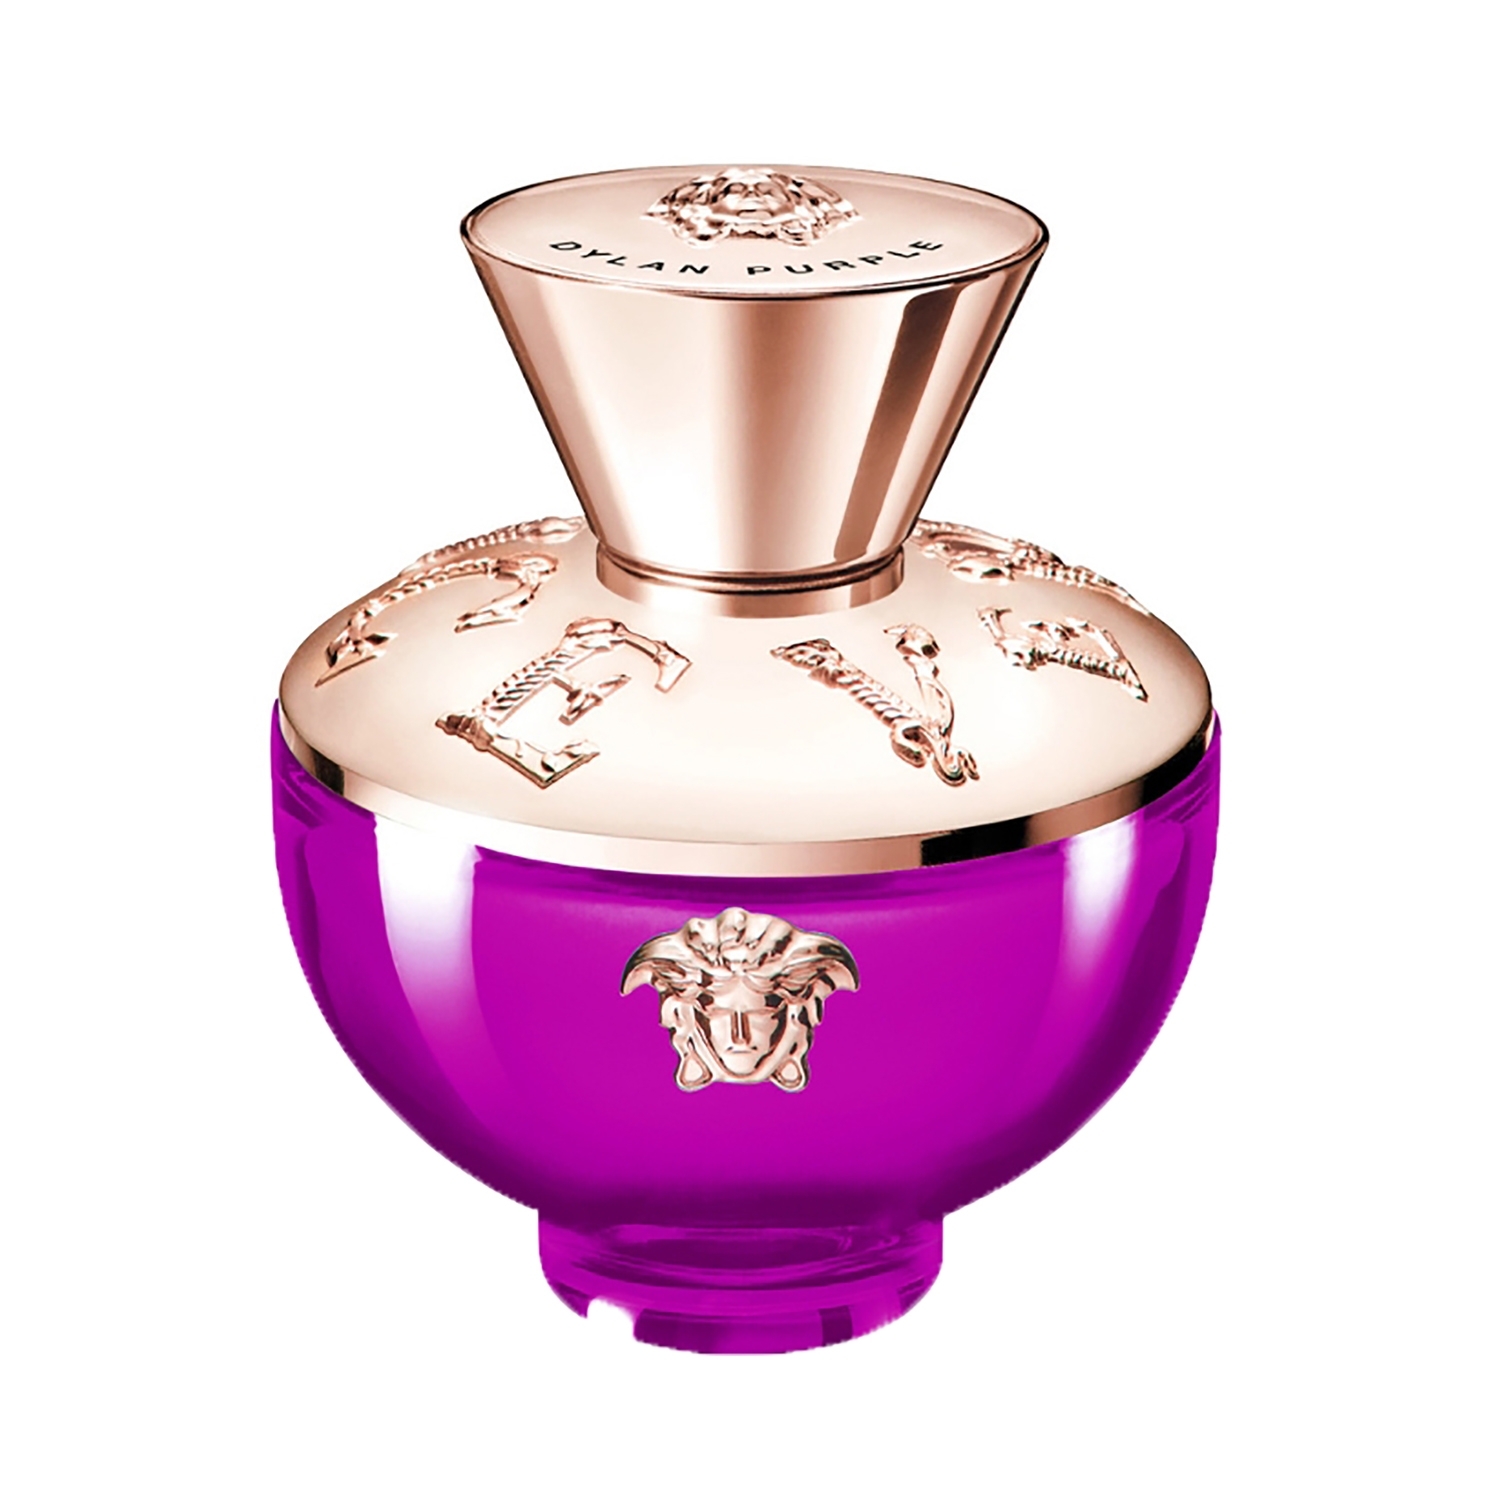 Gucci Bloom Intense Eau de Parfum - 50 ml